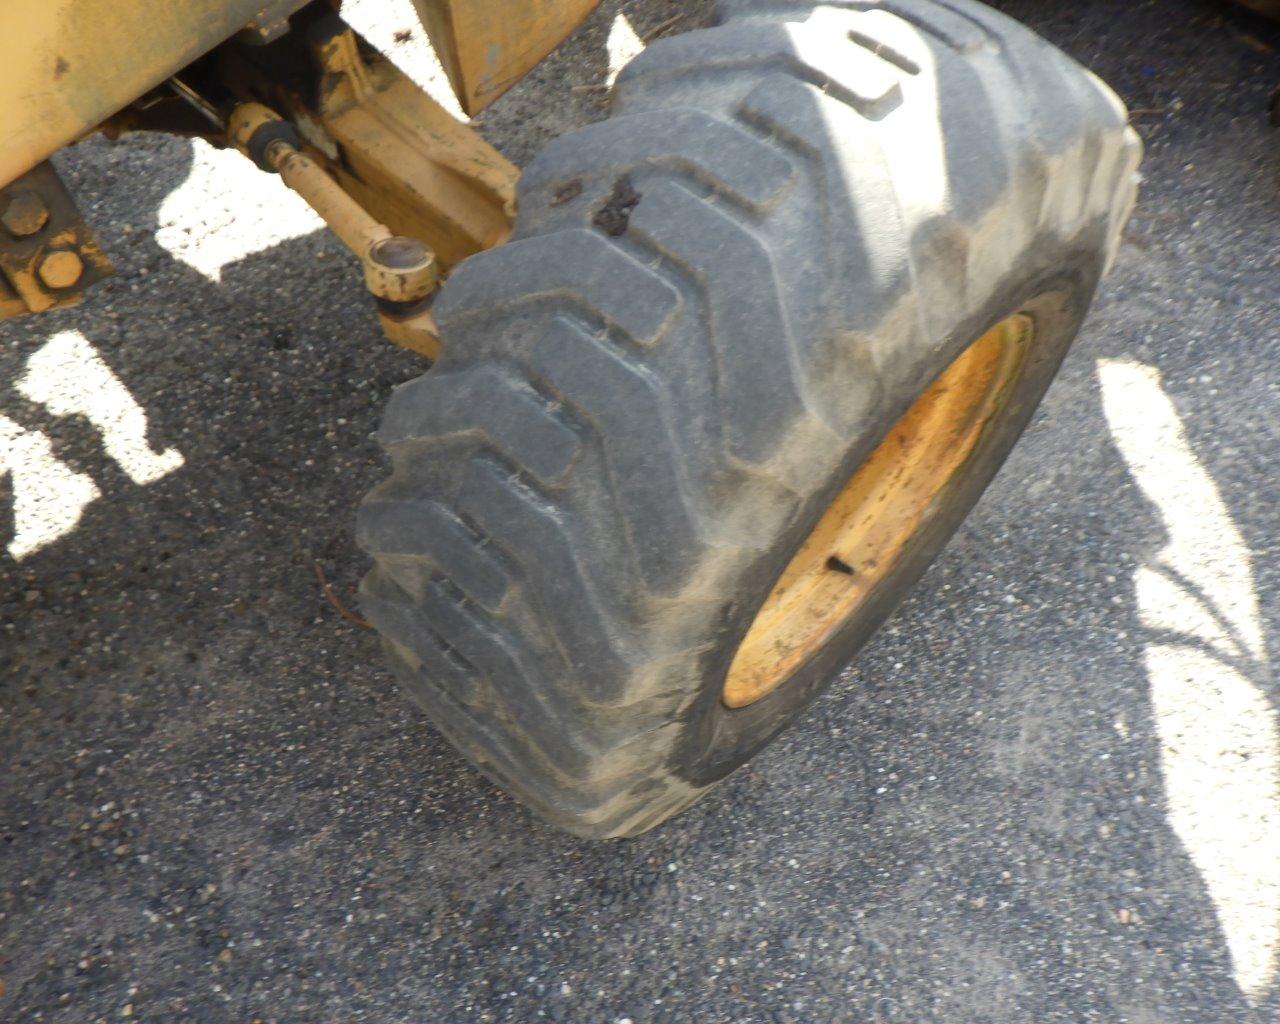 CASE 590 Turbo Wheel Loader Backhoe   EROPS   4 in 1 Bucket   Plow   4x4 s/